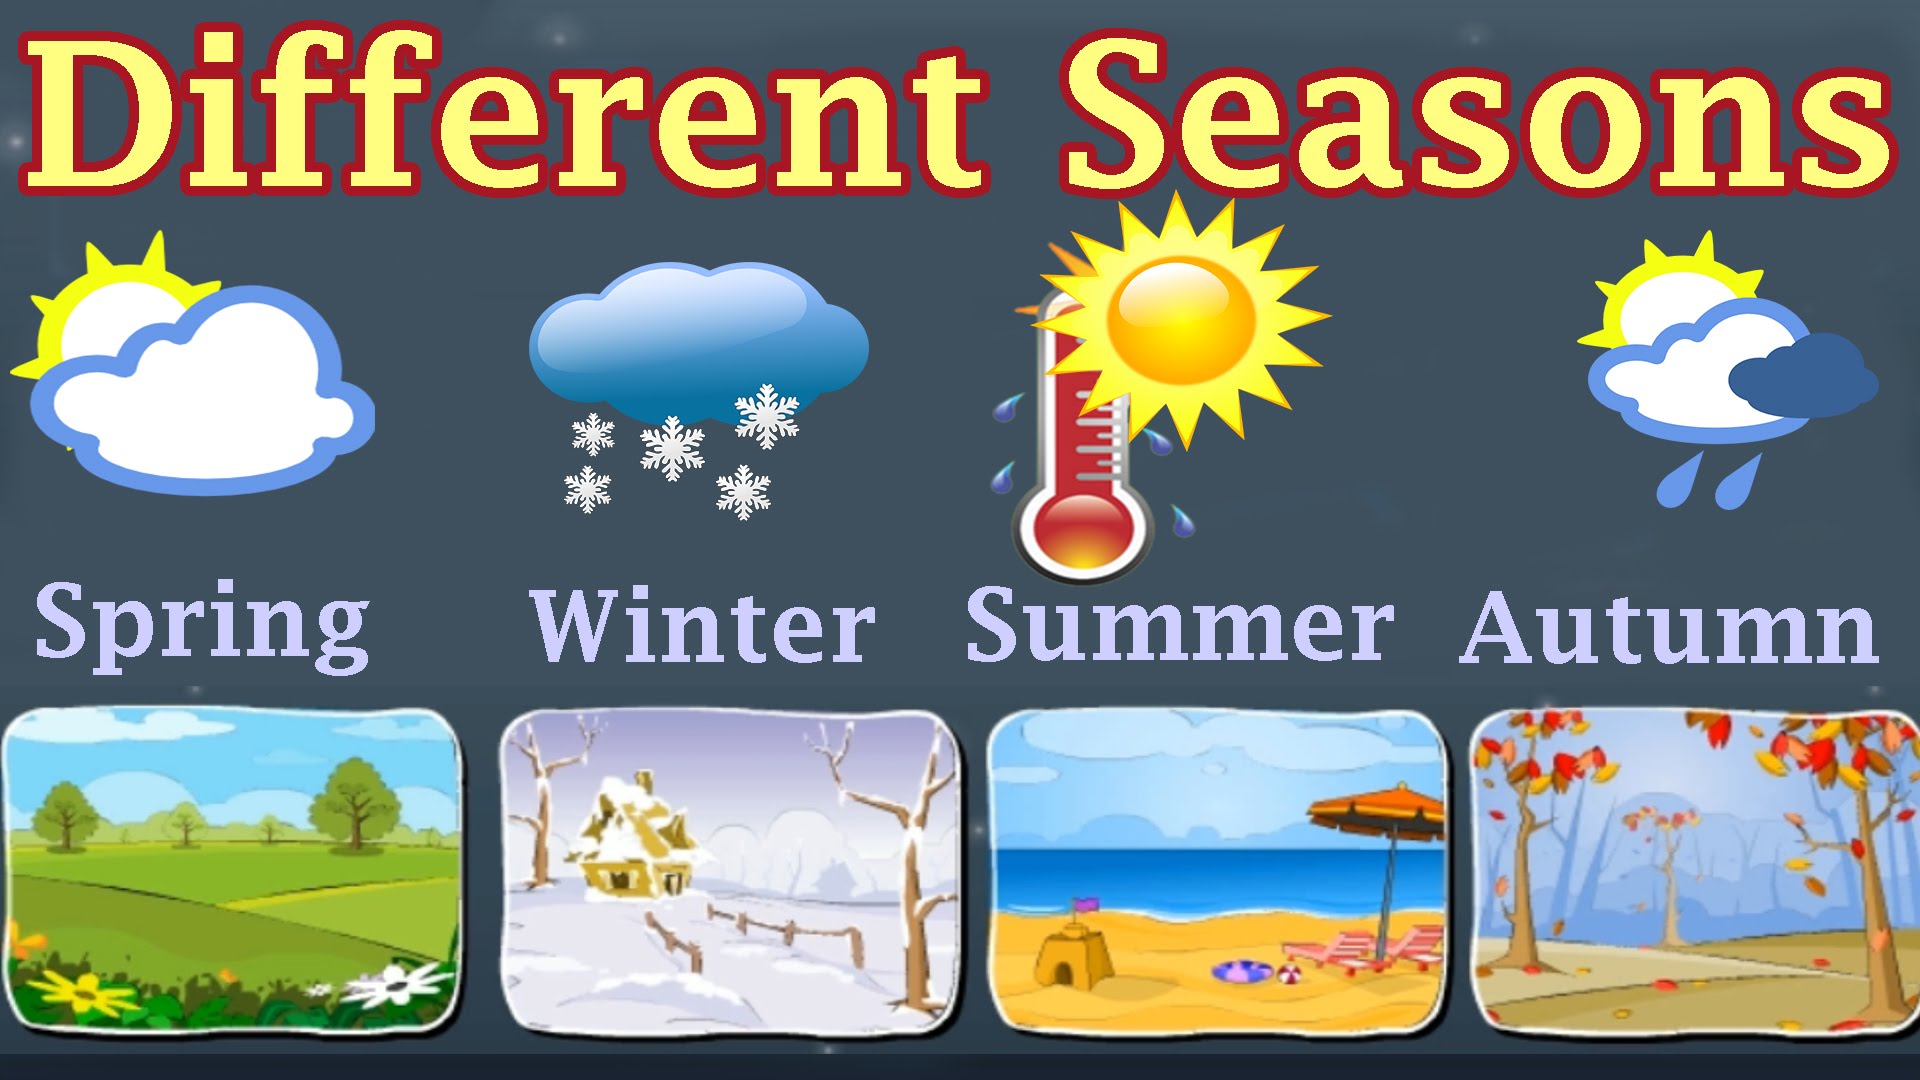 Advanced seasons